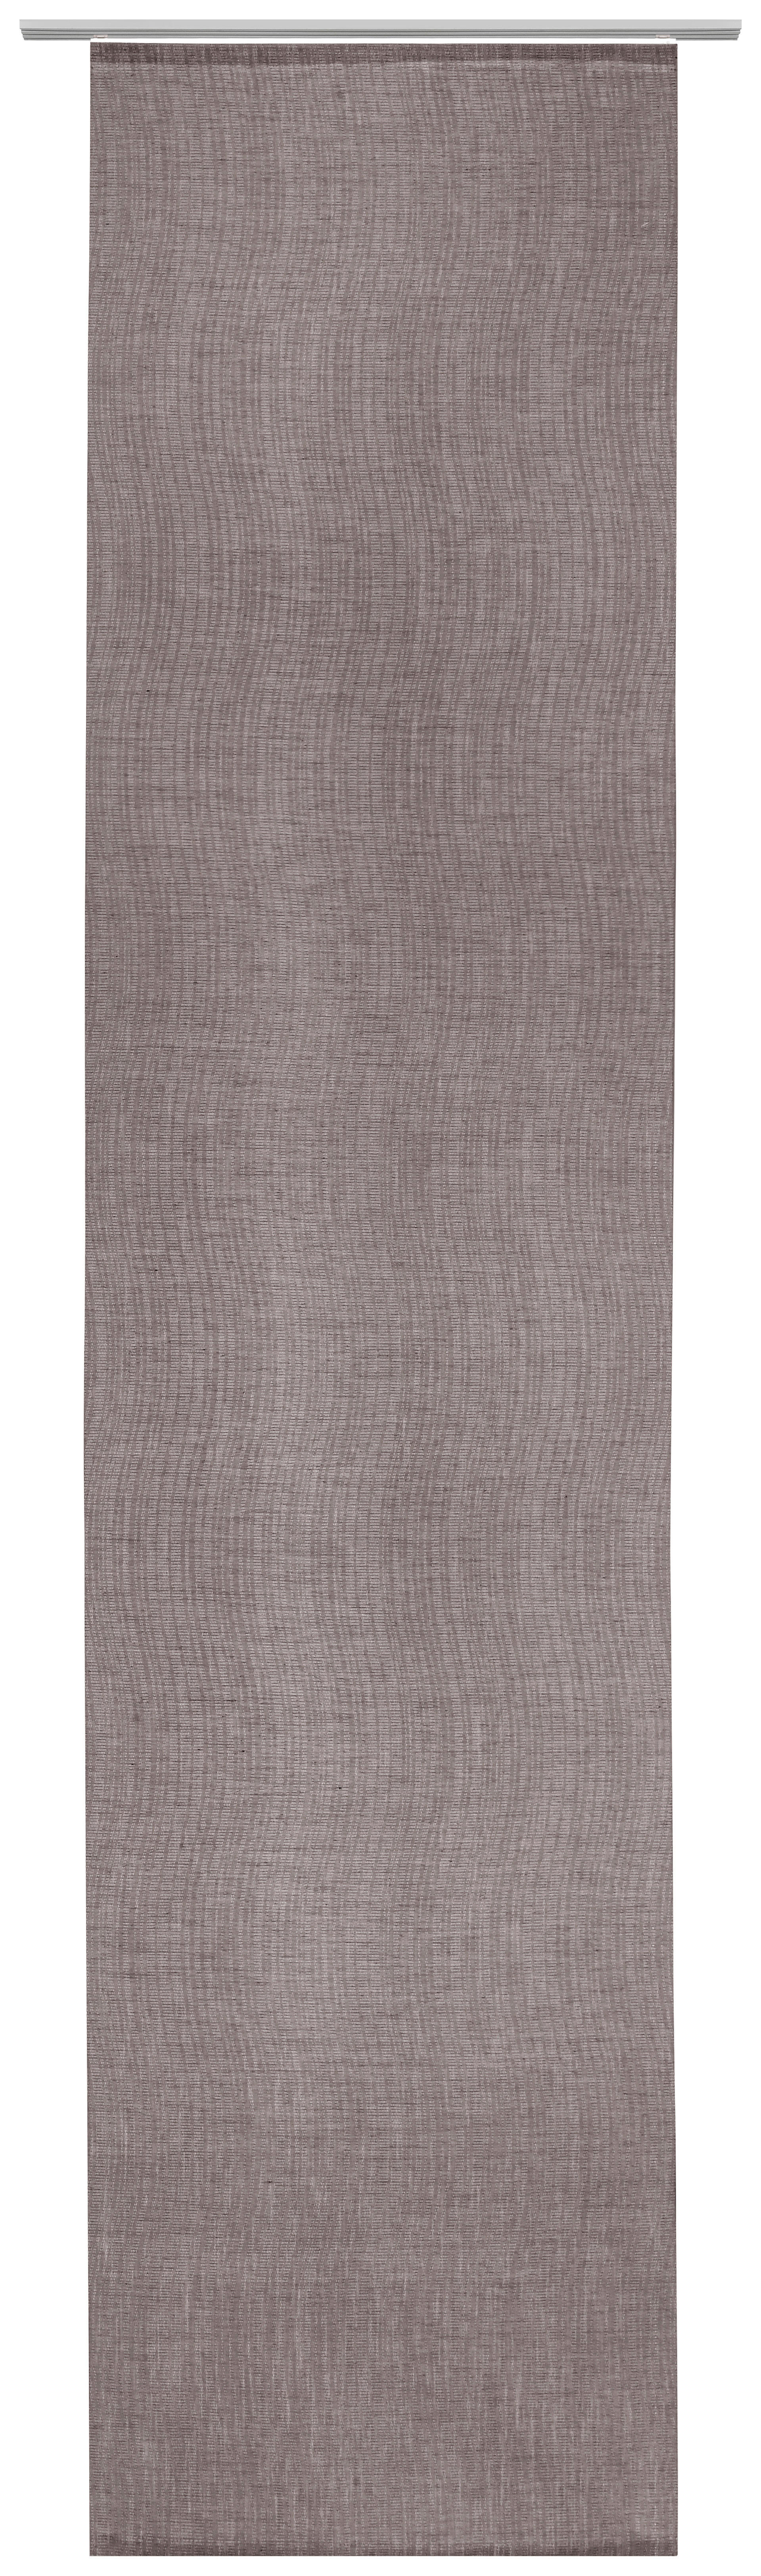 PANEL ZAVJESA smeđa - smeđa, Design, tekstil (60/255cm) - Novel